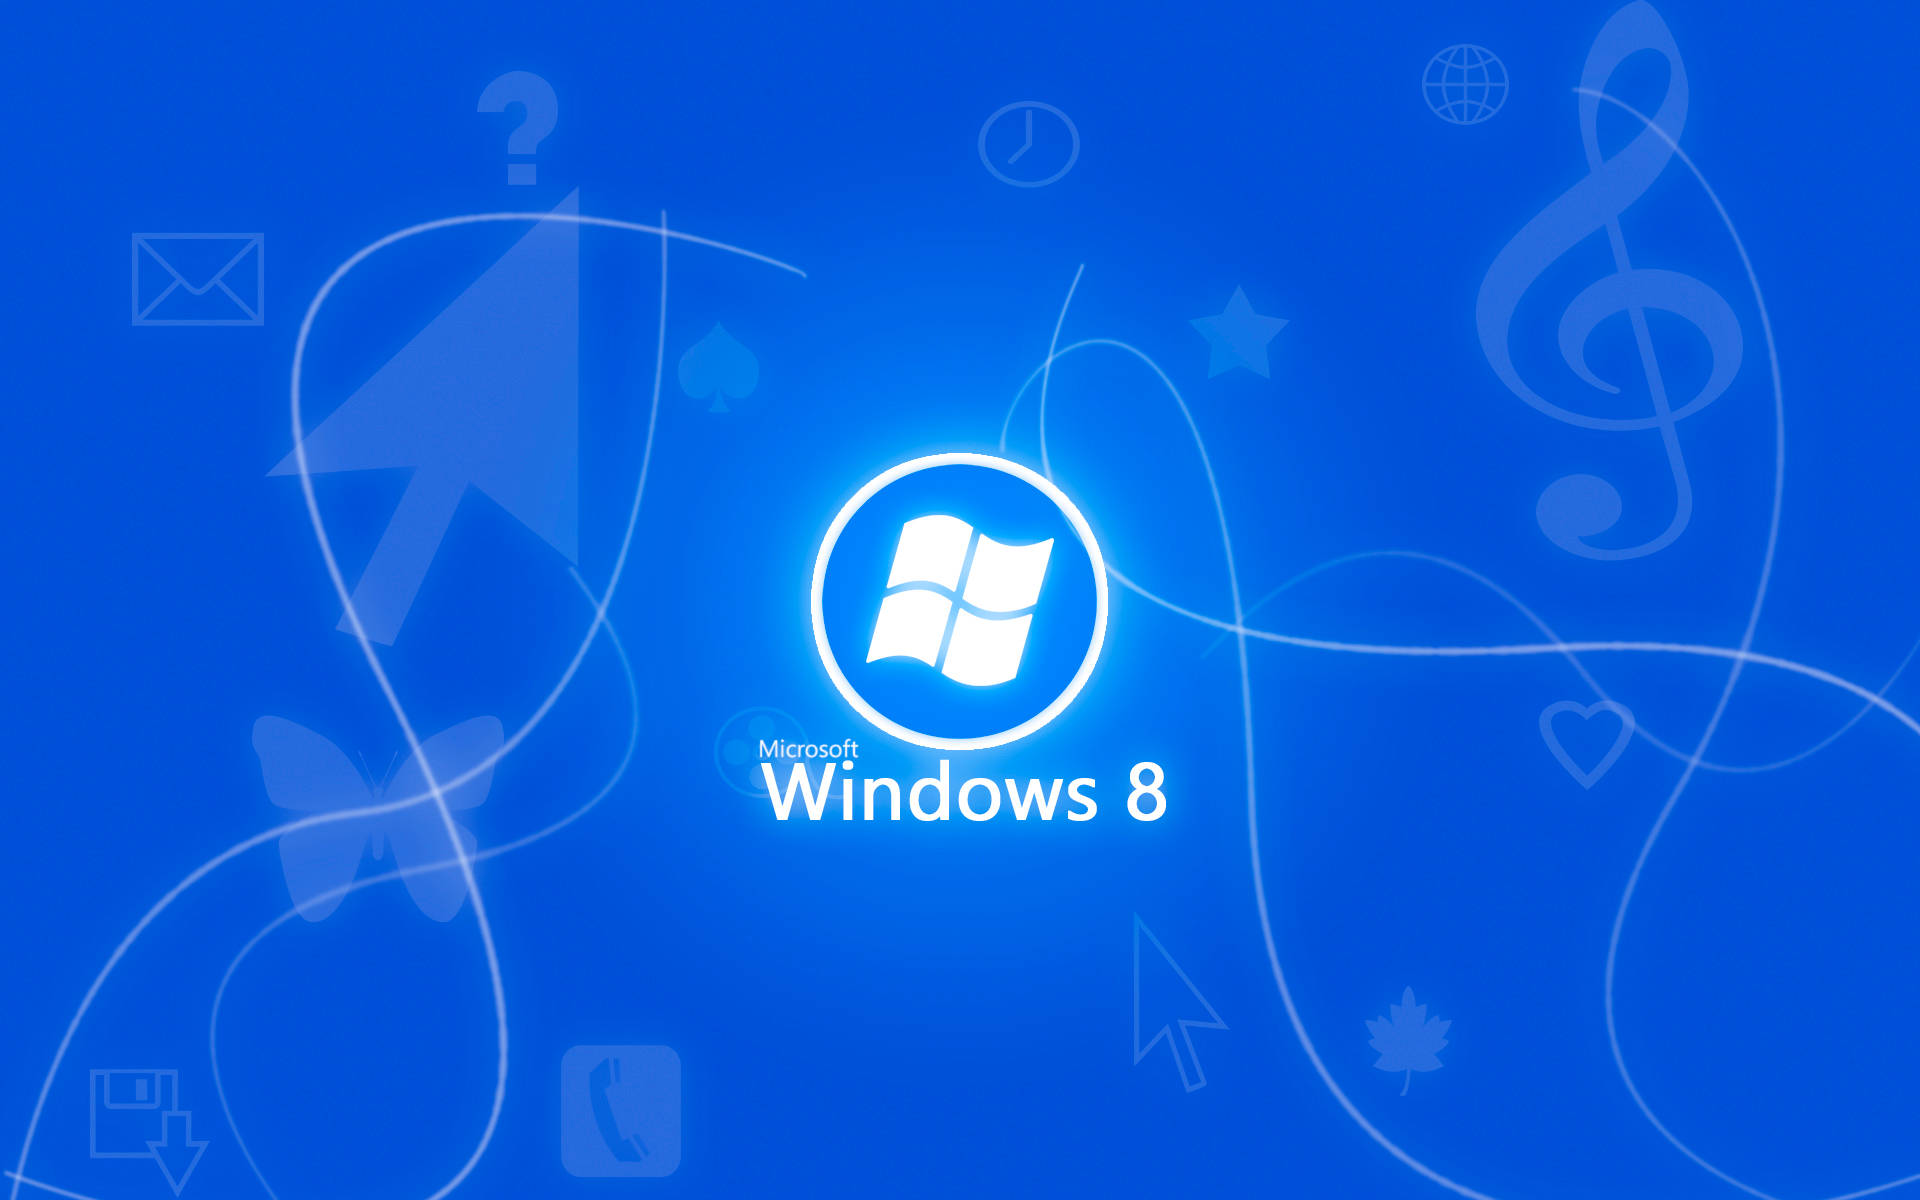 Logotipode Windows 8 En Neón Azul. Fondo de pantalla